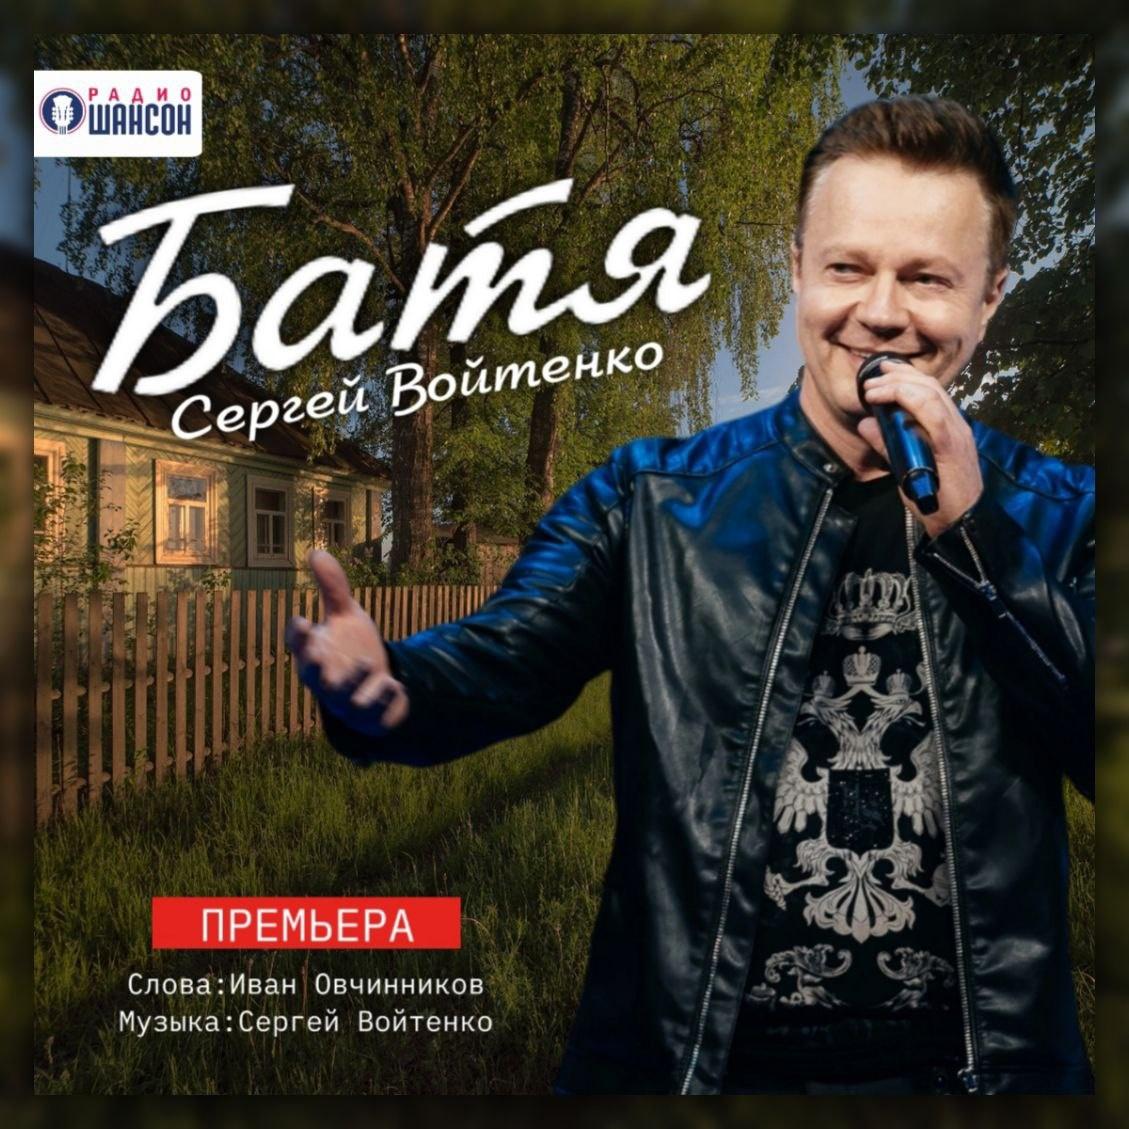 Сергей Войтенко представил премьеру песни «Батя» на всех цифровых площадках и на «Радио Шансон»